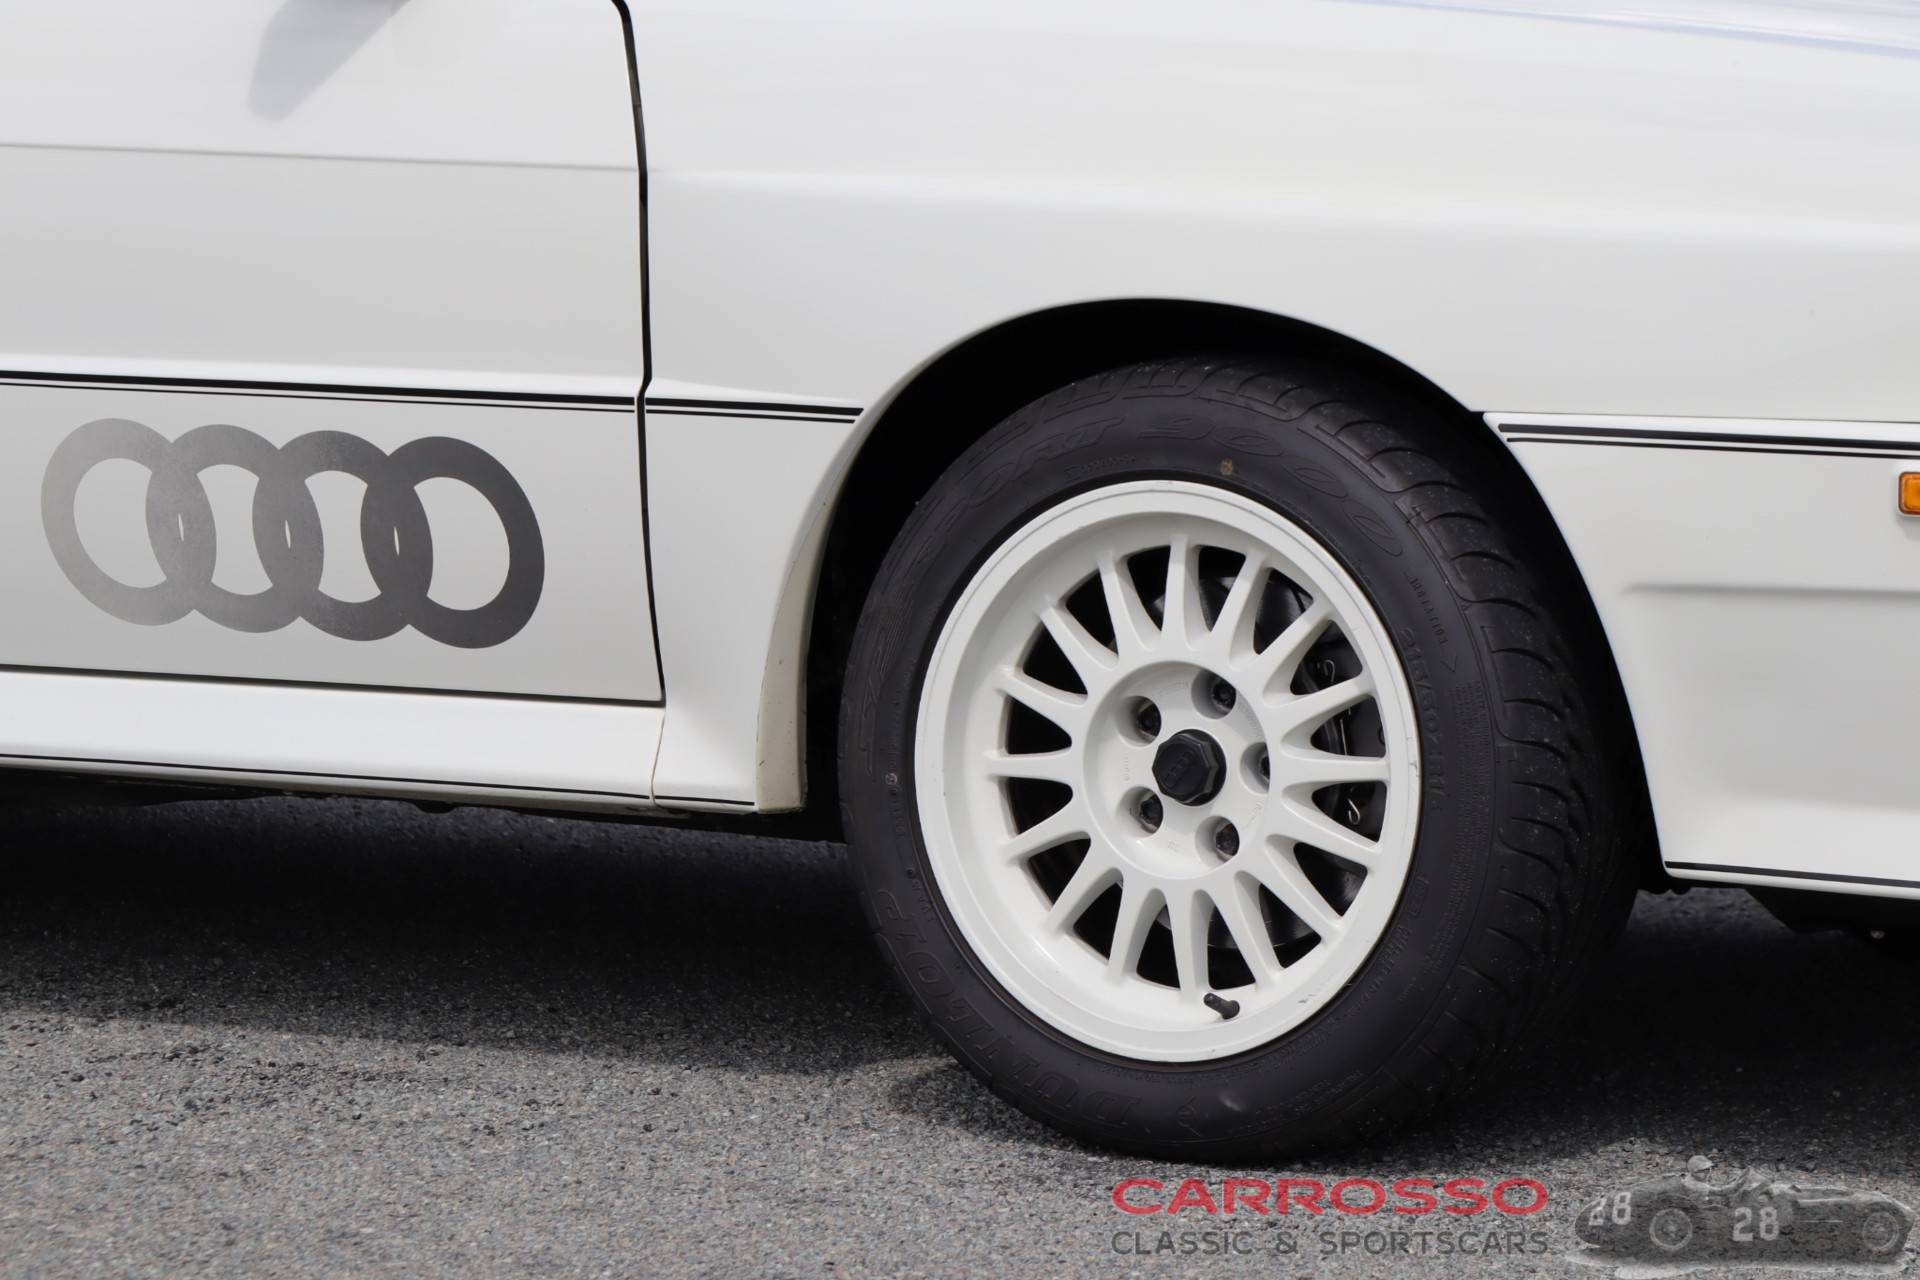 Zu Verkaufen: Audi quattro (1983) angeboten für 69.500 €